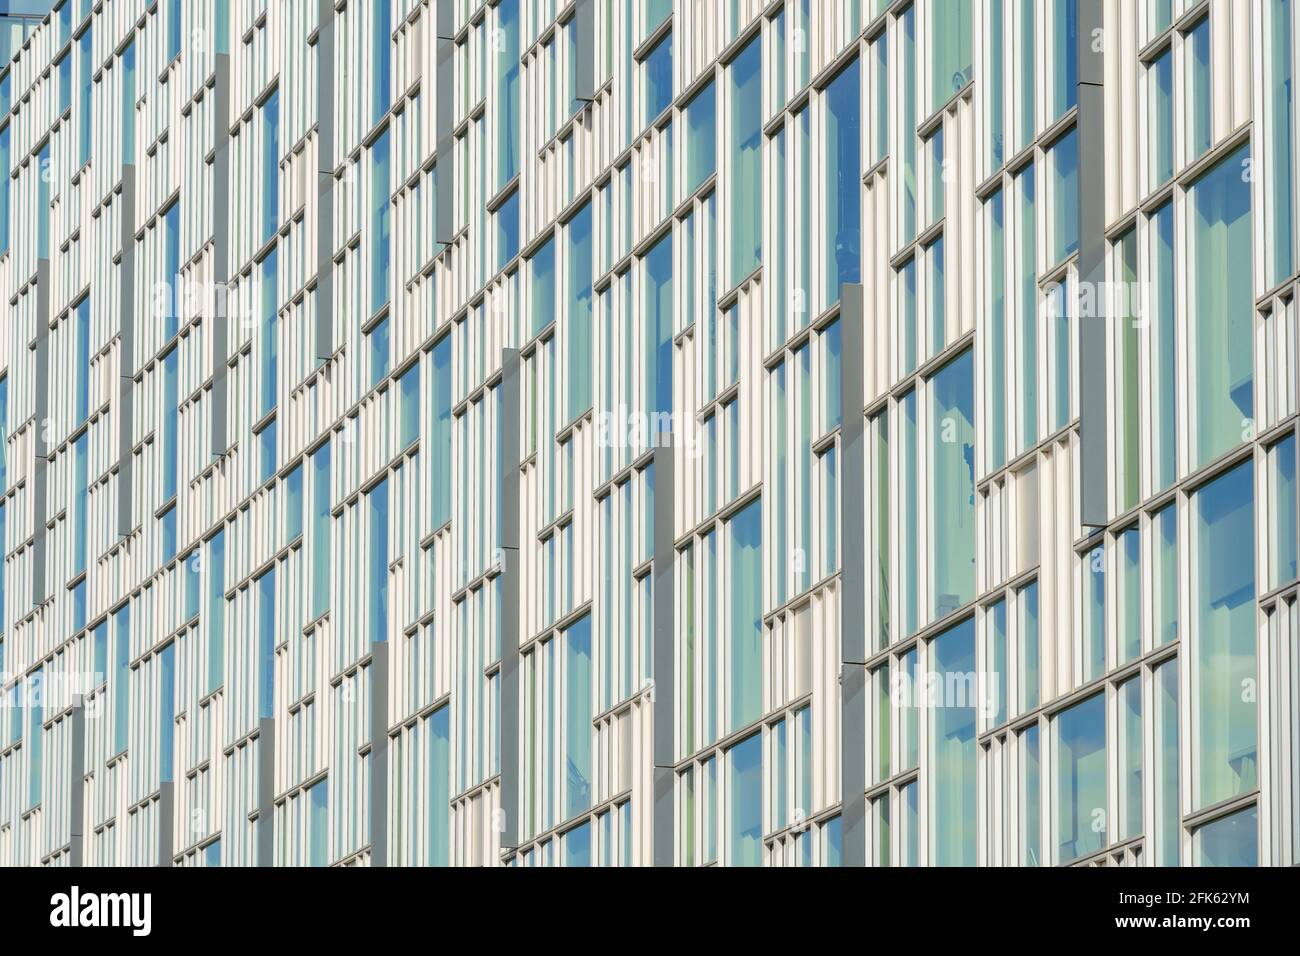 Luglio 2020. Londra. finestre e dettagli architettonici nella penisola di Greenwich, Londra, Inghilterra Foto Stock